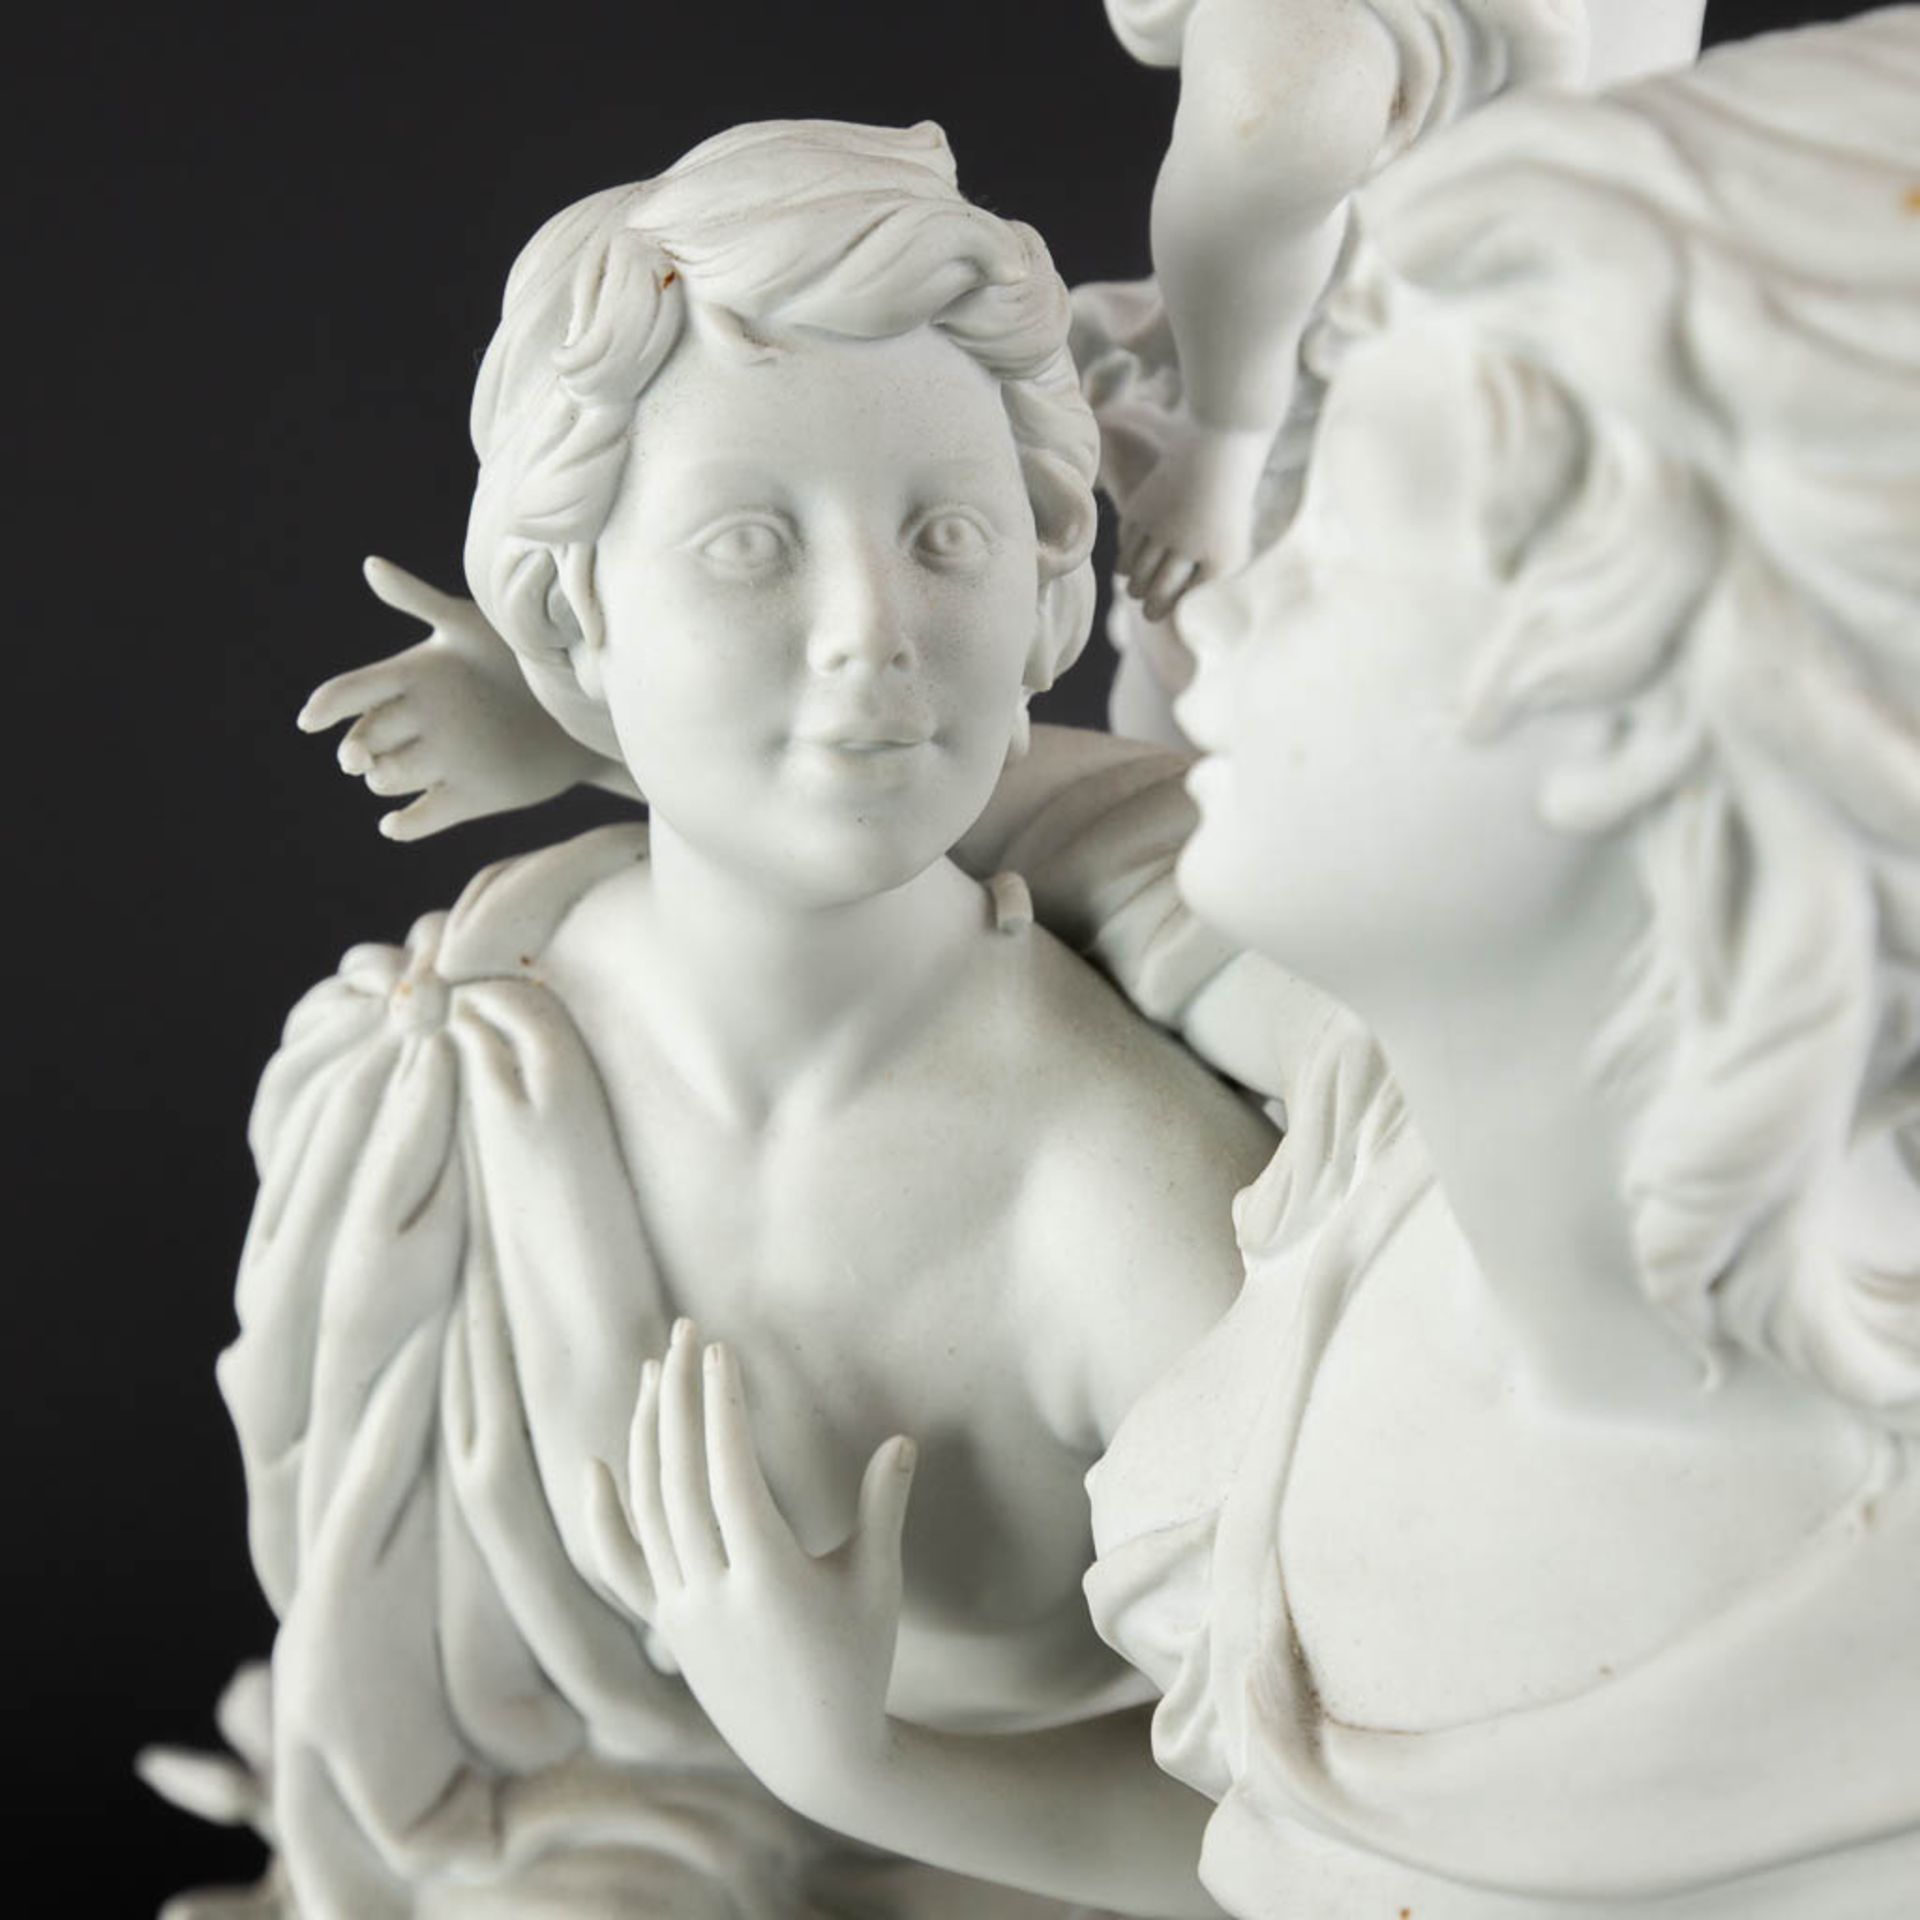 A large group, bisque porcelain with a romantic scène. 20th C. (D:26 x W:36 x H:47 cm) - Image 9 of 18